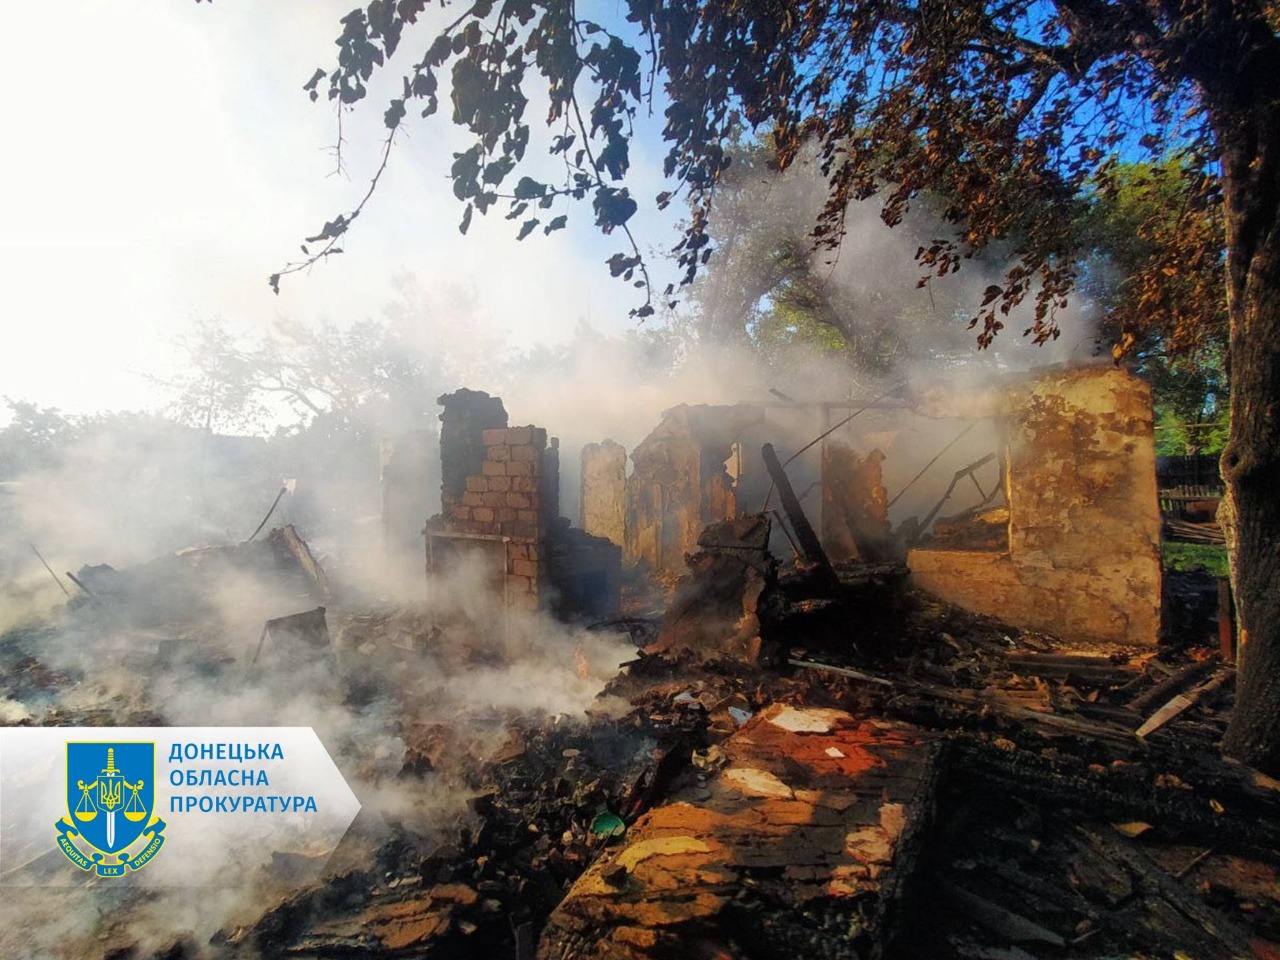 Чергові обстріли населених пунктів Донеччини із загиблими і пораненими - розпочато розслідування